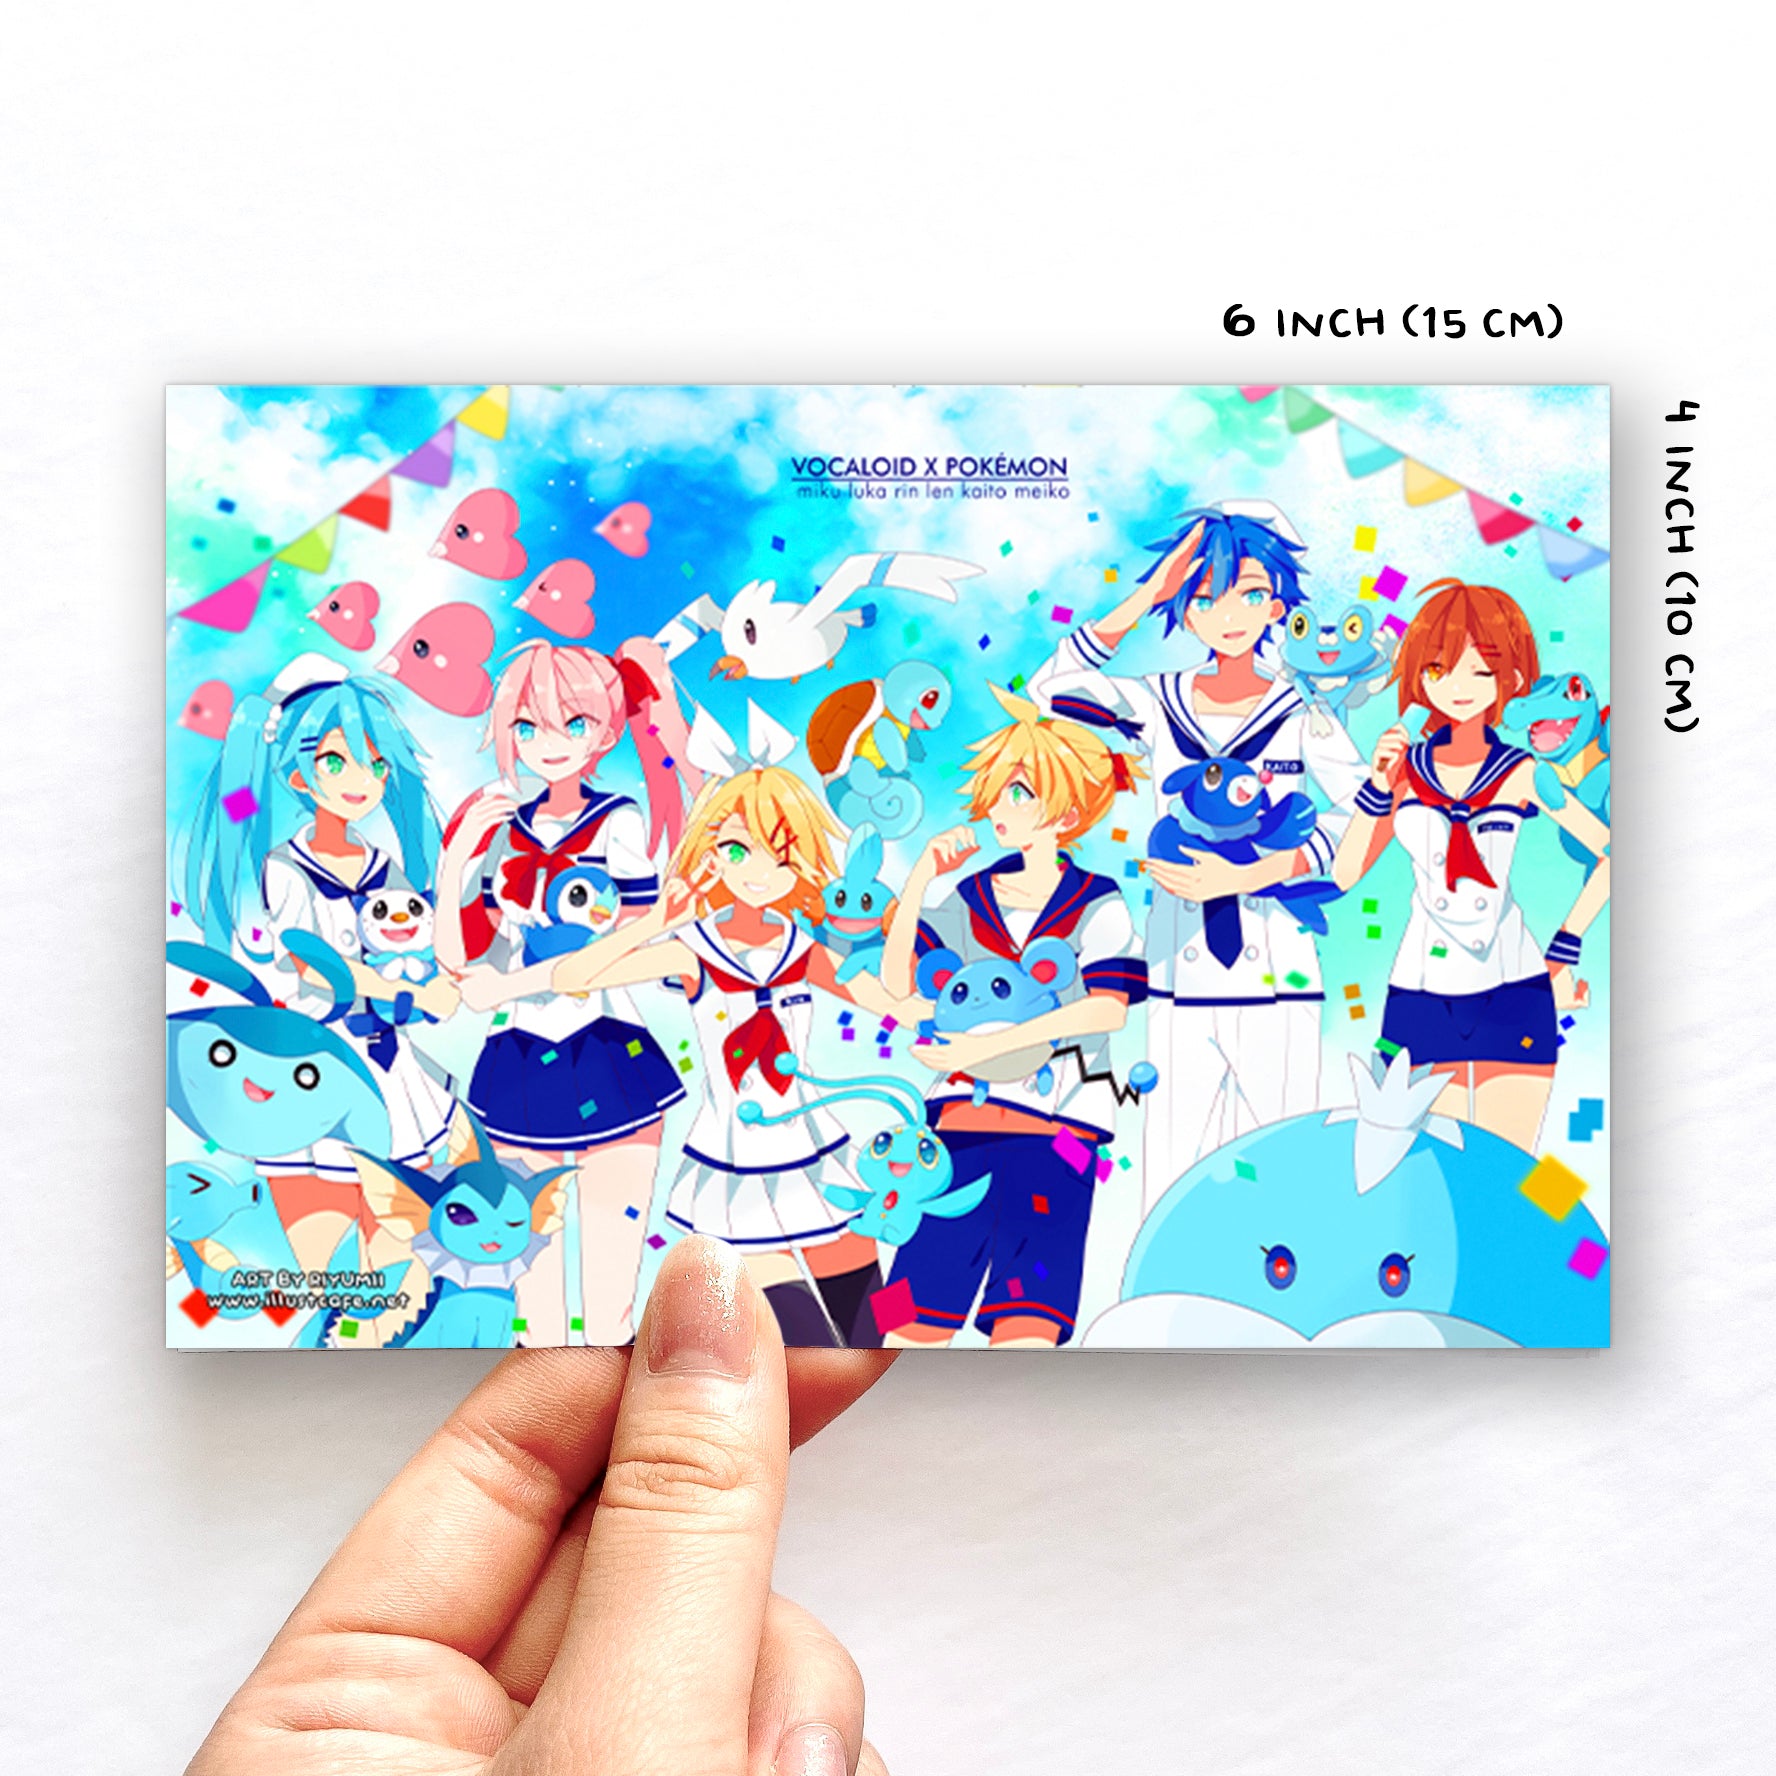 Vocaloid Stickers Miku, Rin, Len, Kaito, Luka, Meiko 